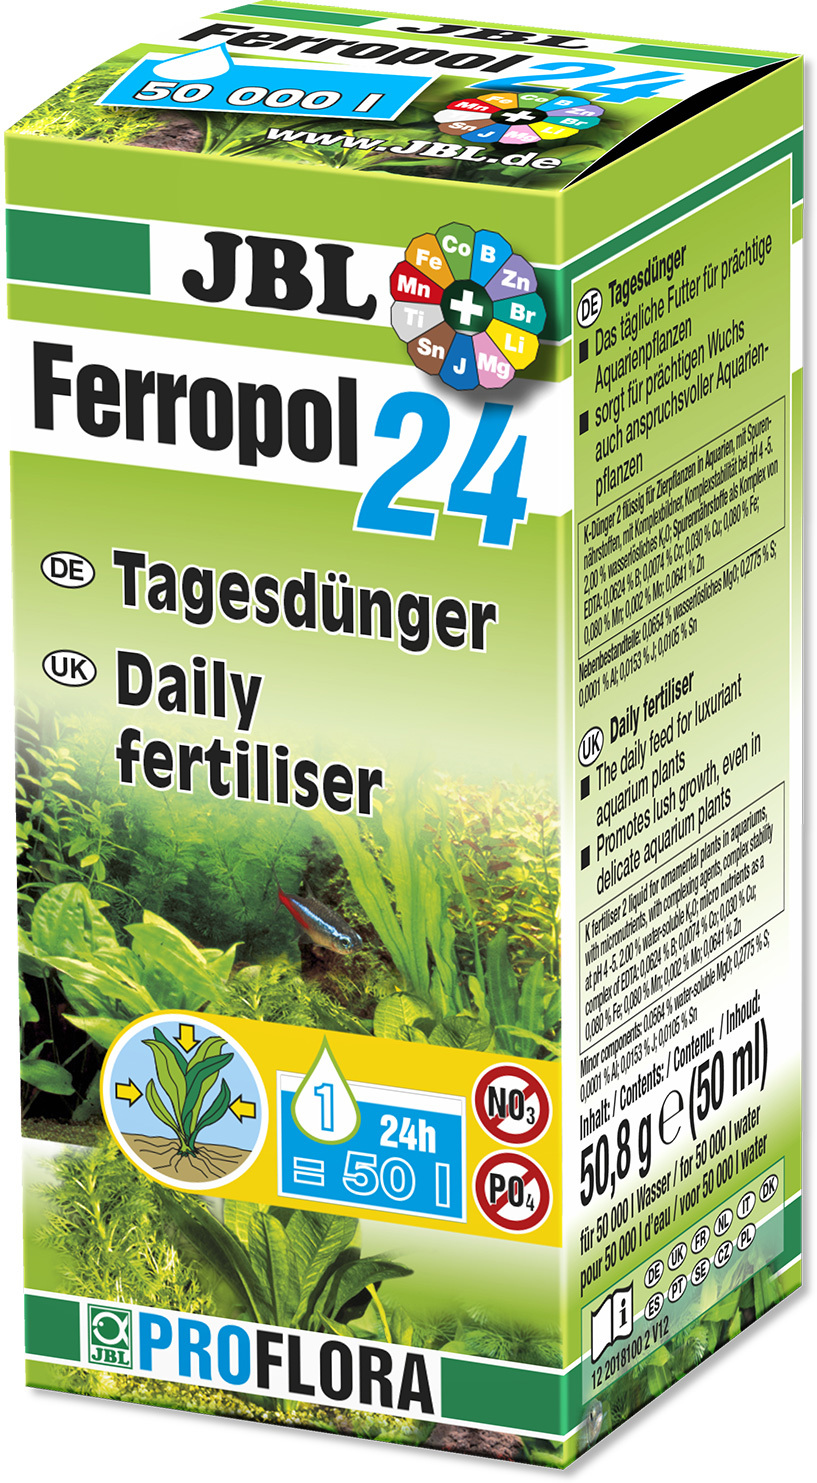 JBL Ferropol 24 fertilizator pentru plante - zoom